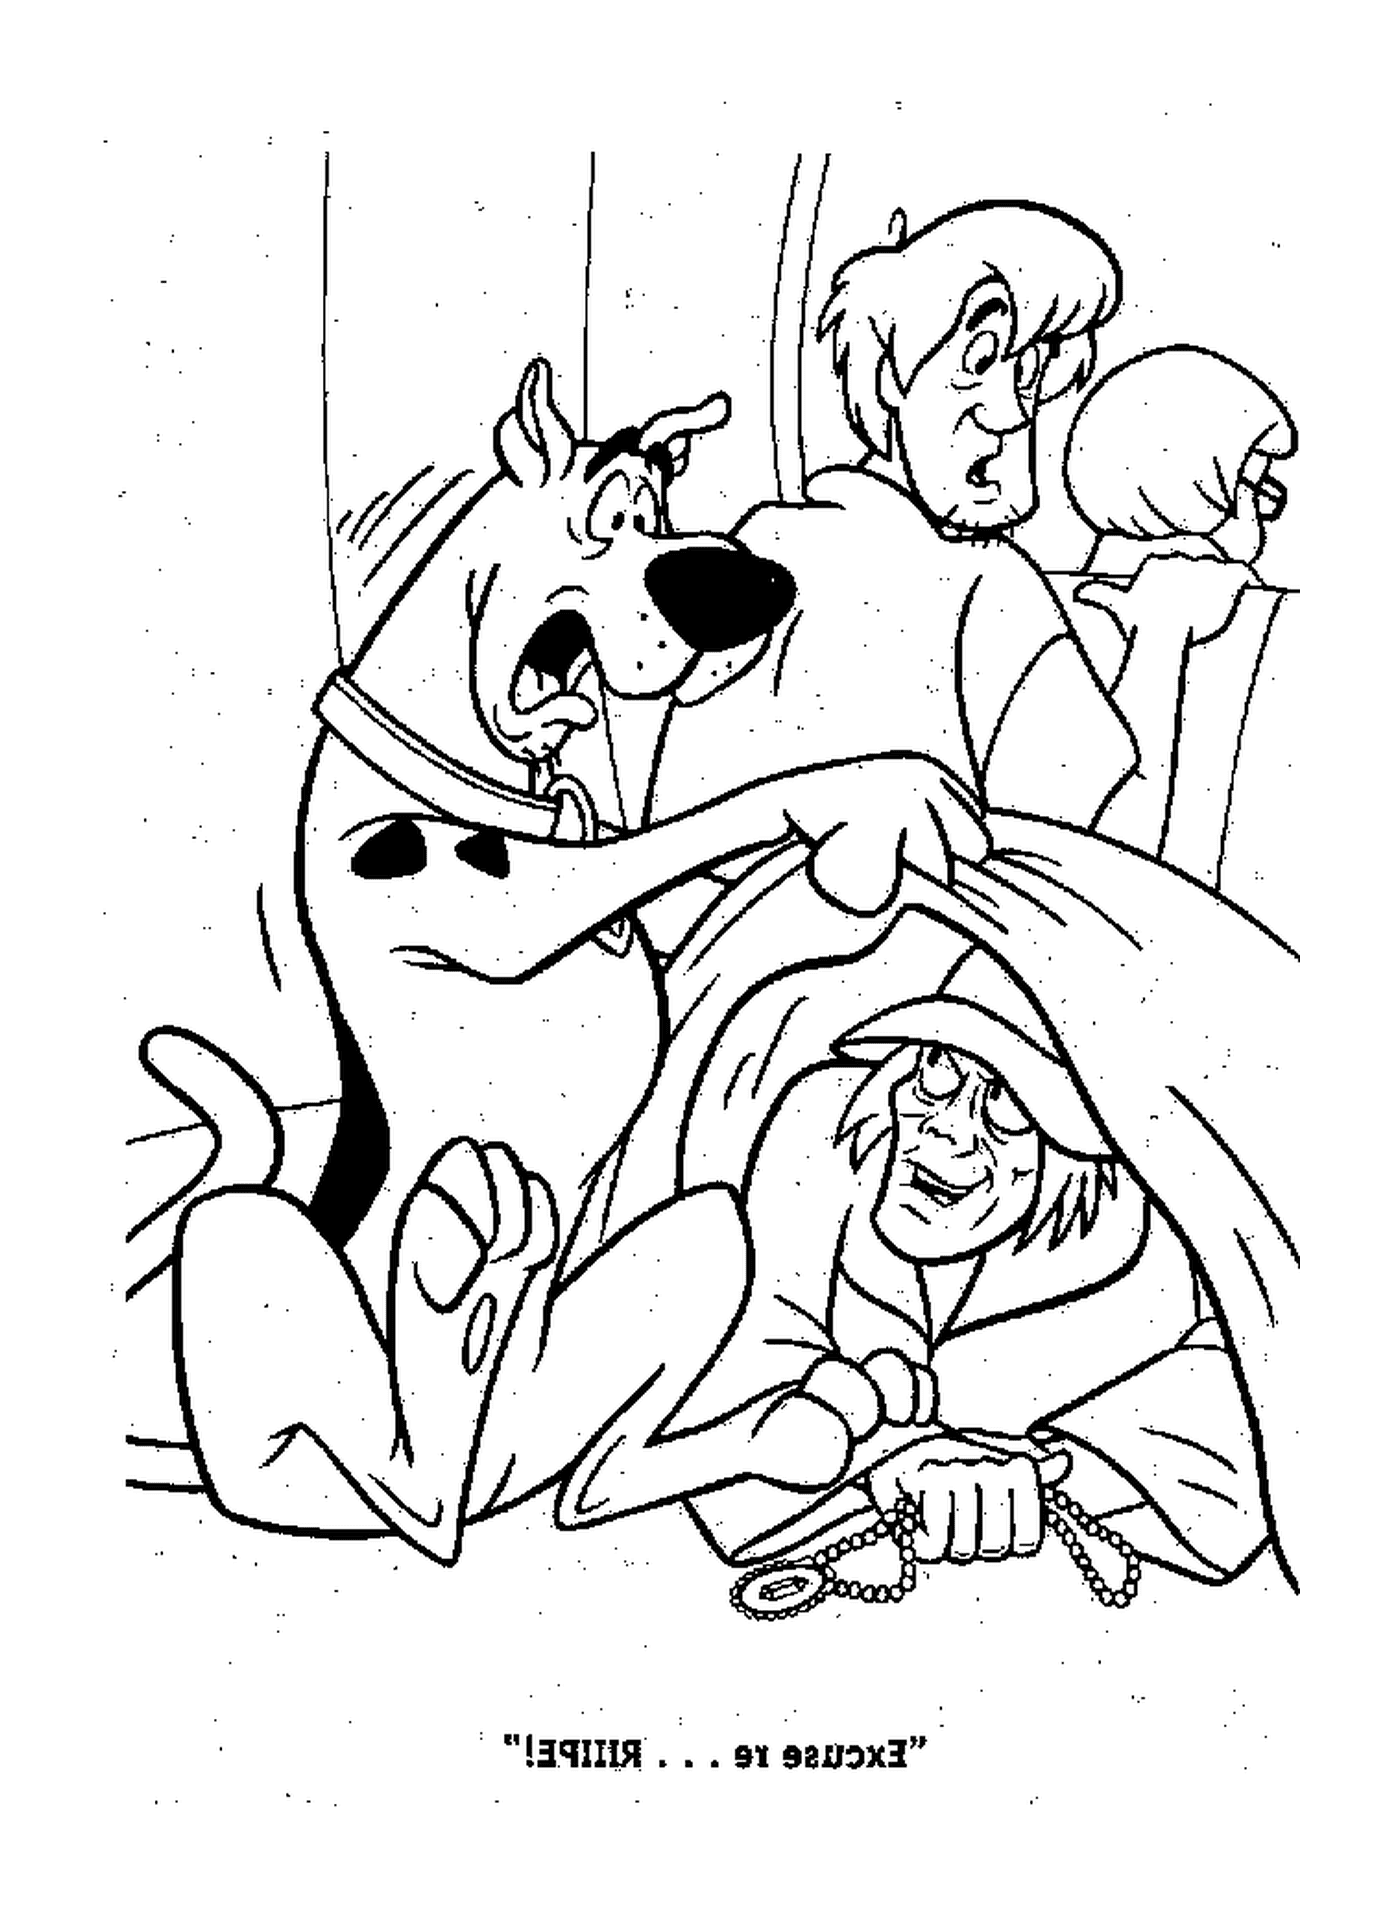  Mistério associado ao Scooby-Doo 